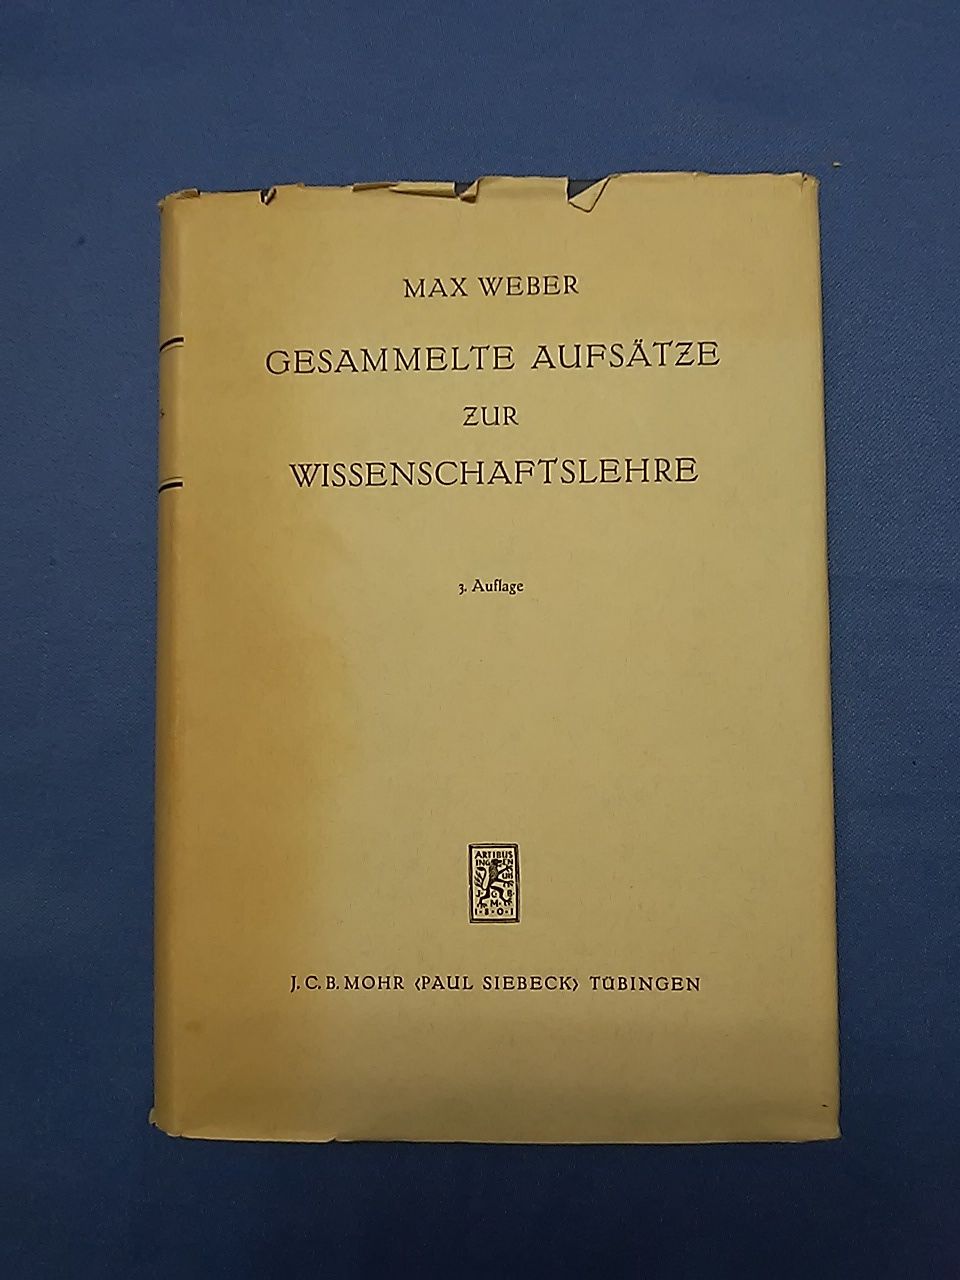 Gesammelte Aufsätze zur Wissenschaftslehre. Max Weber. Hrsg. von Johannes Winckelmann - Weber, Max und Johannes (Mitwirkender) Winckelmann